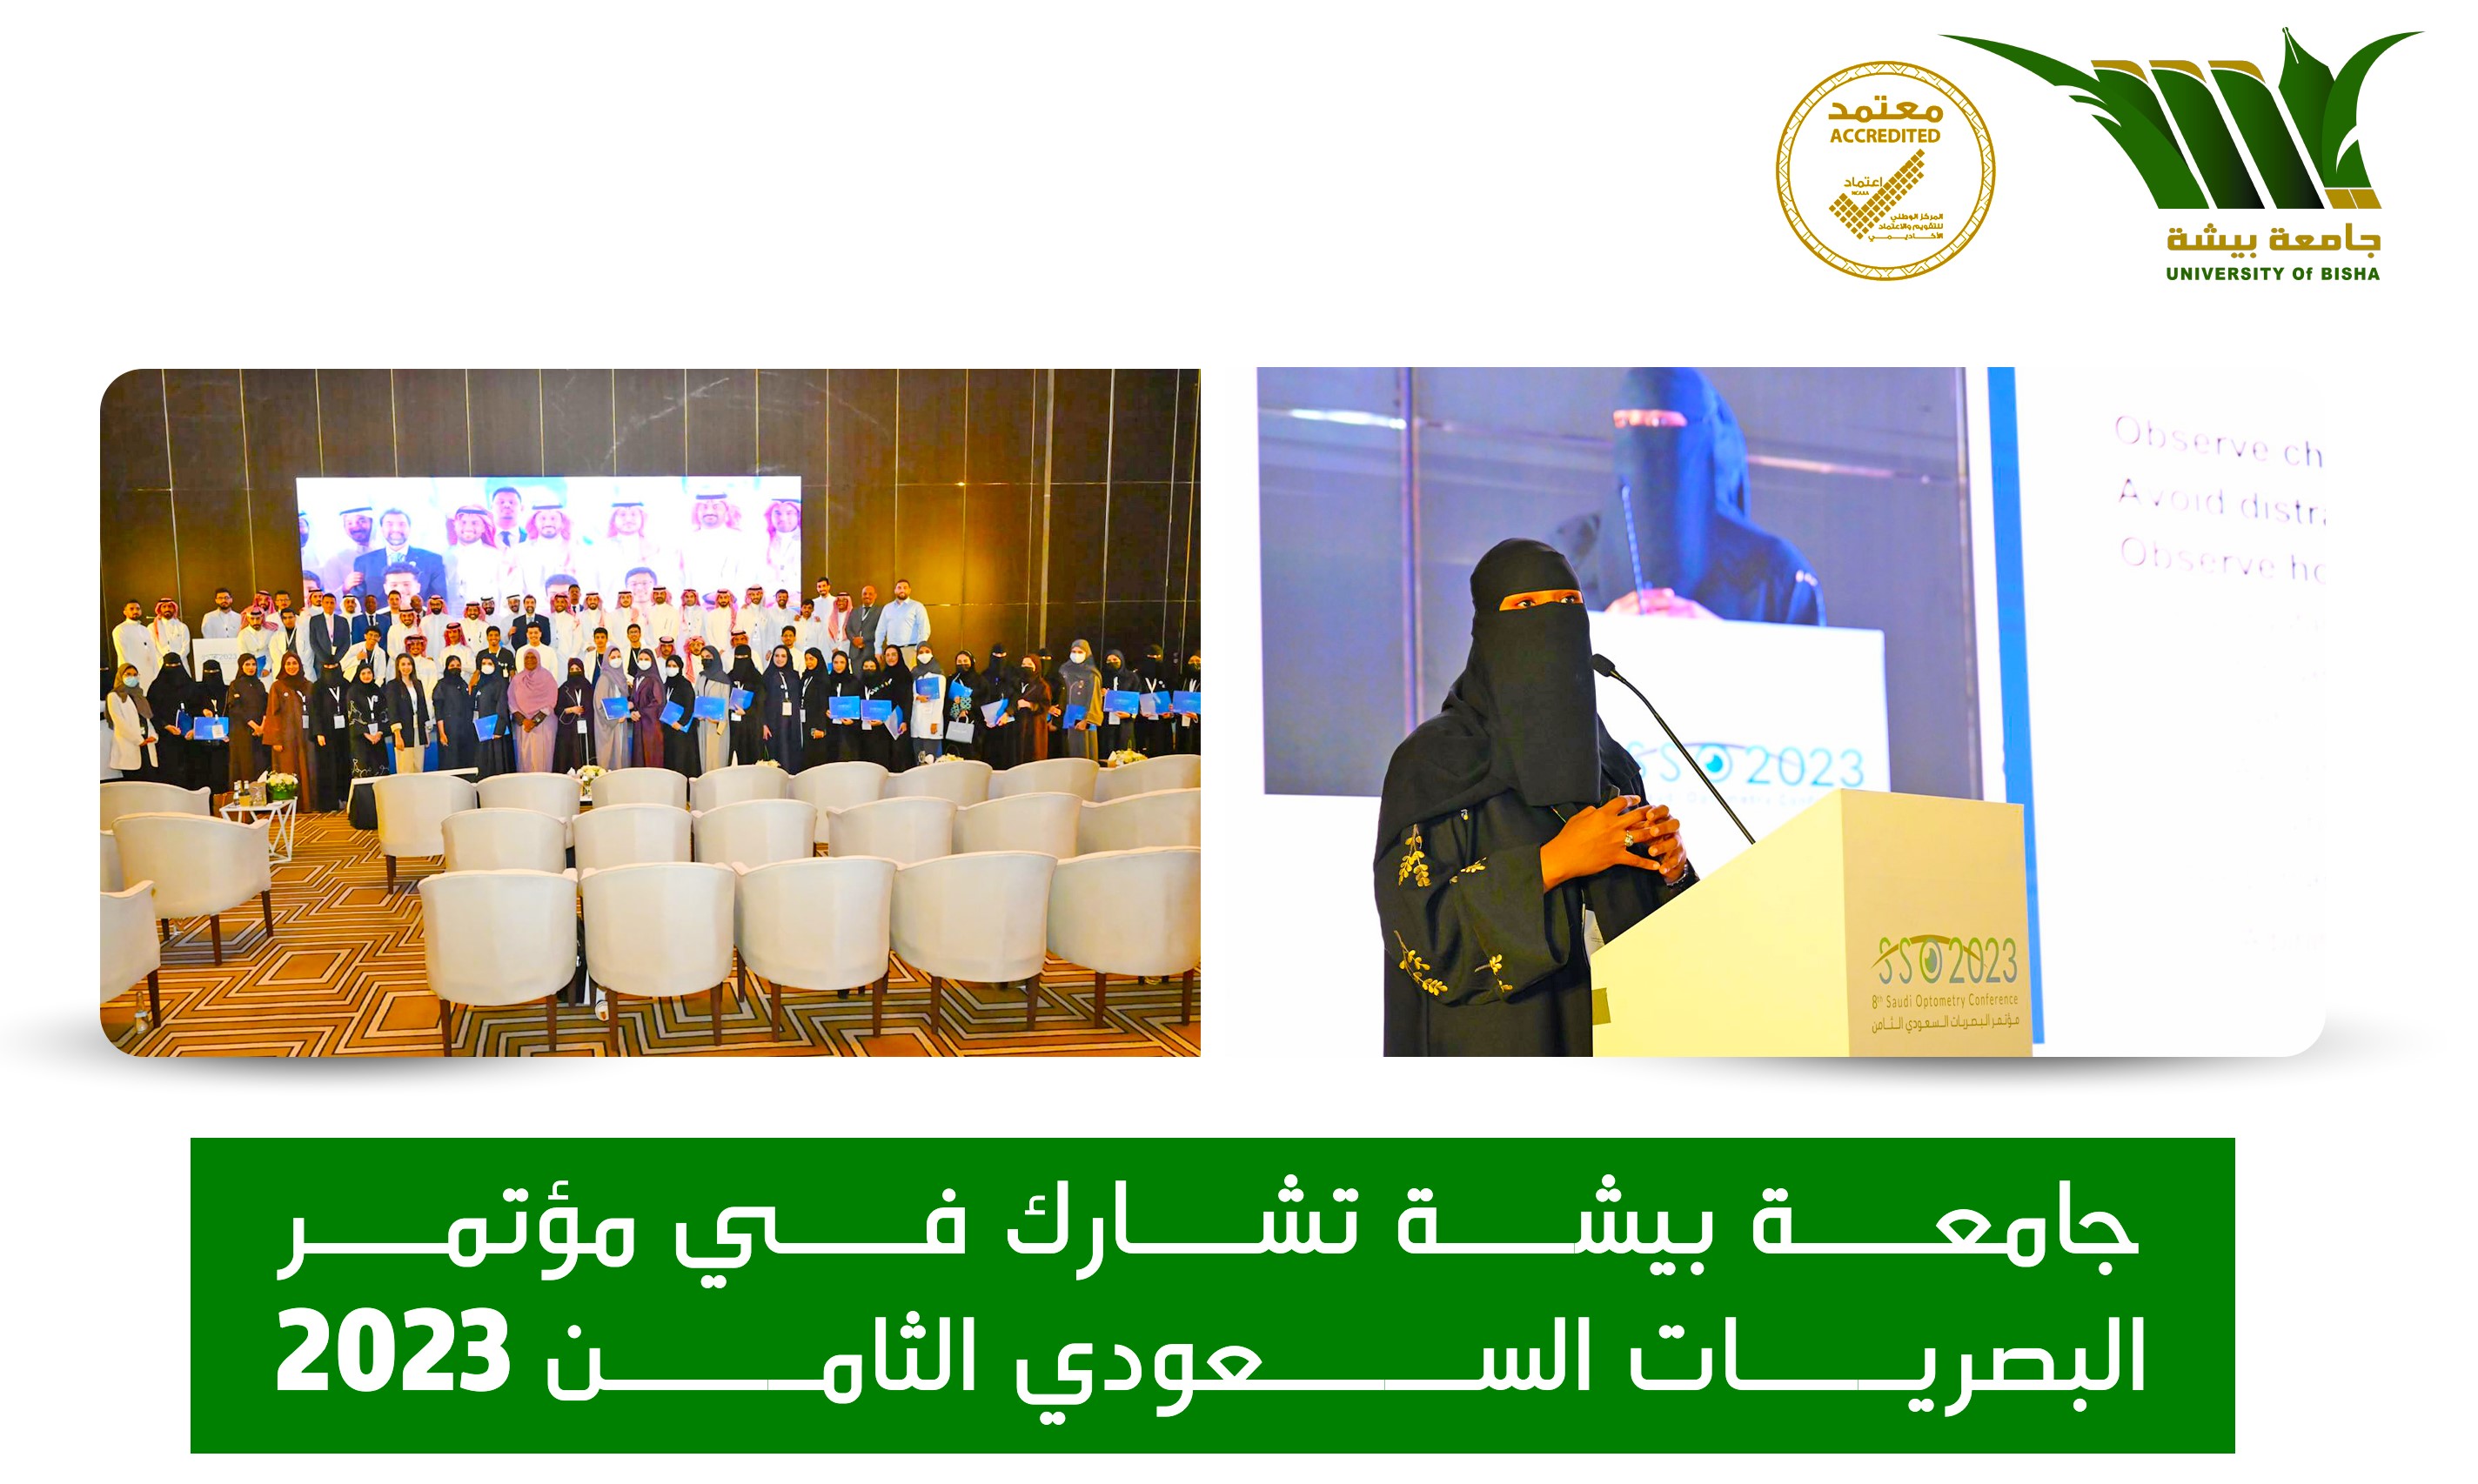 جامعة بيشة تشارك في مؤتمر البصريات السعودي الثامن 2023 